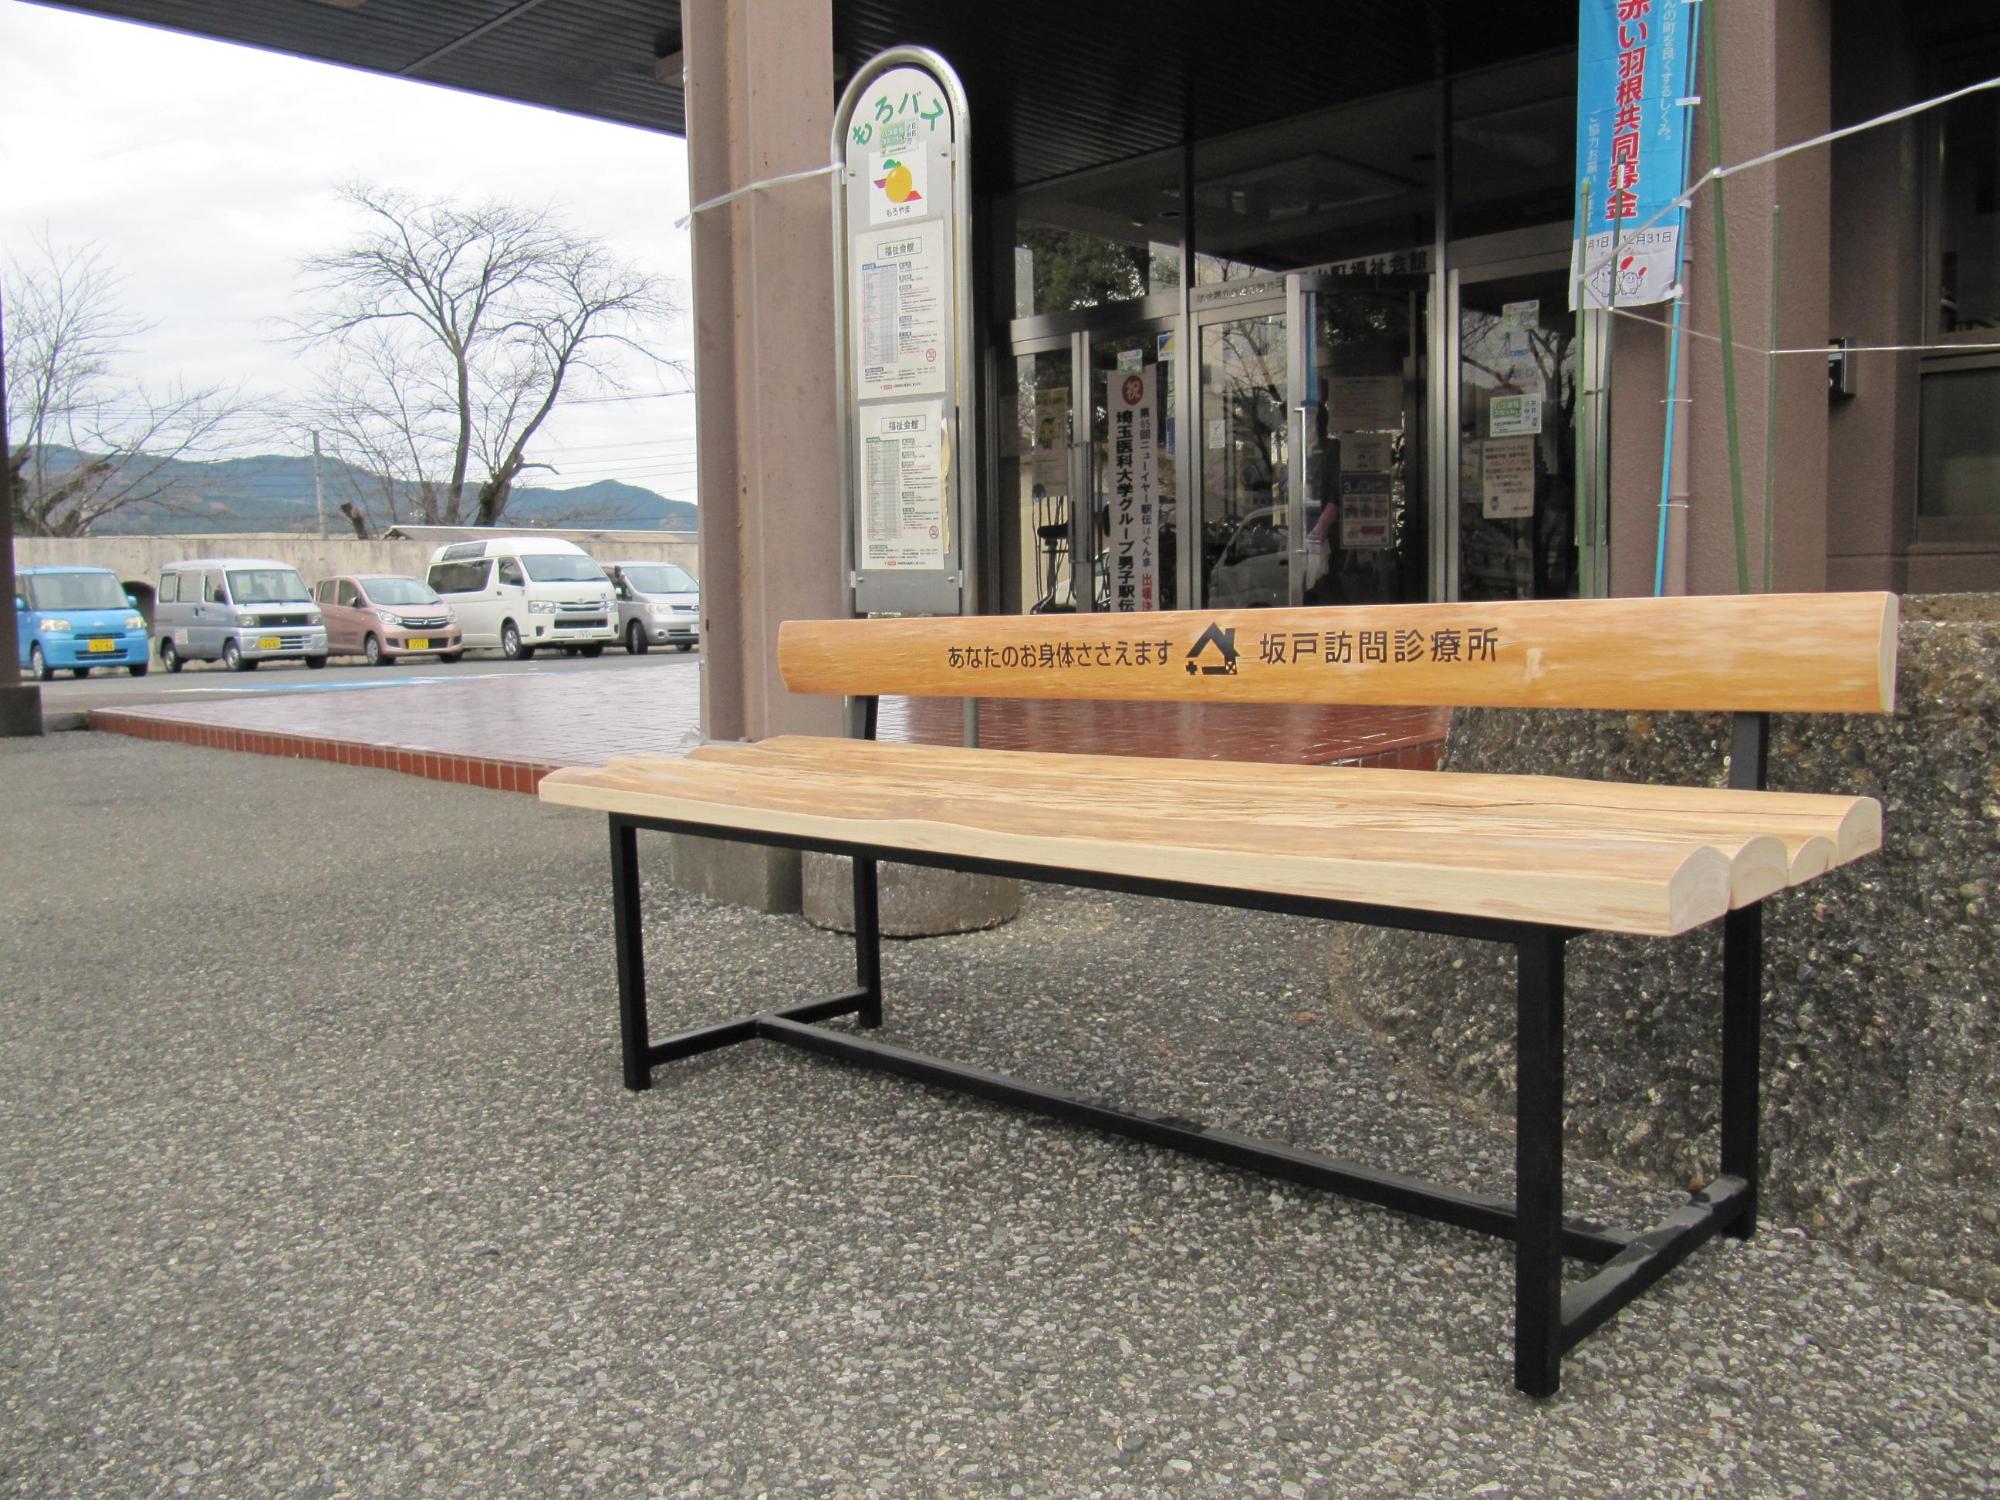 木製のベンチの背もたれに「坂戸訪問診療所」と文字の入ったベンチが福祉会館前のバス停に設置されている写真